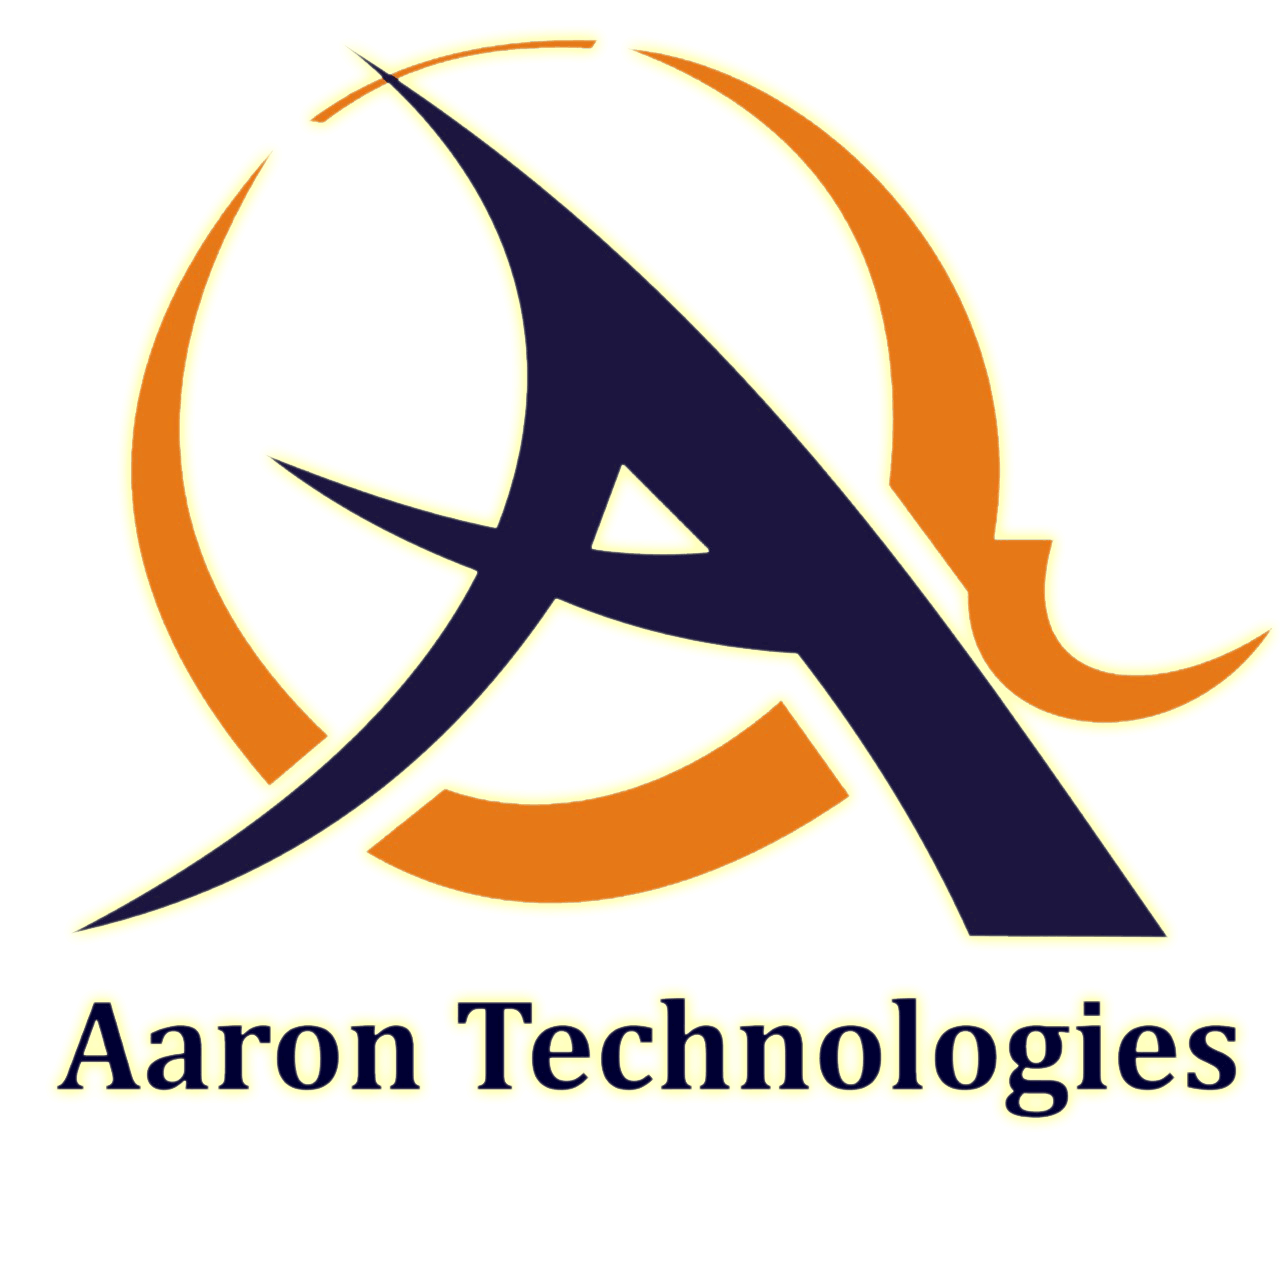 Aaron Technologies